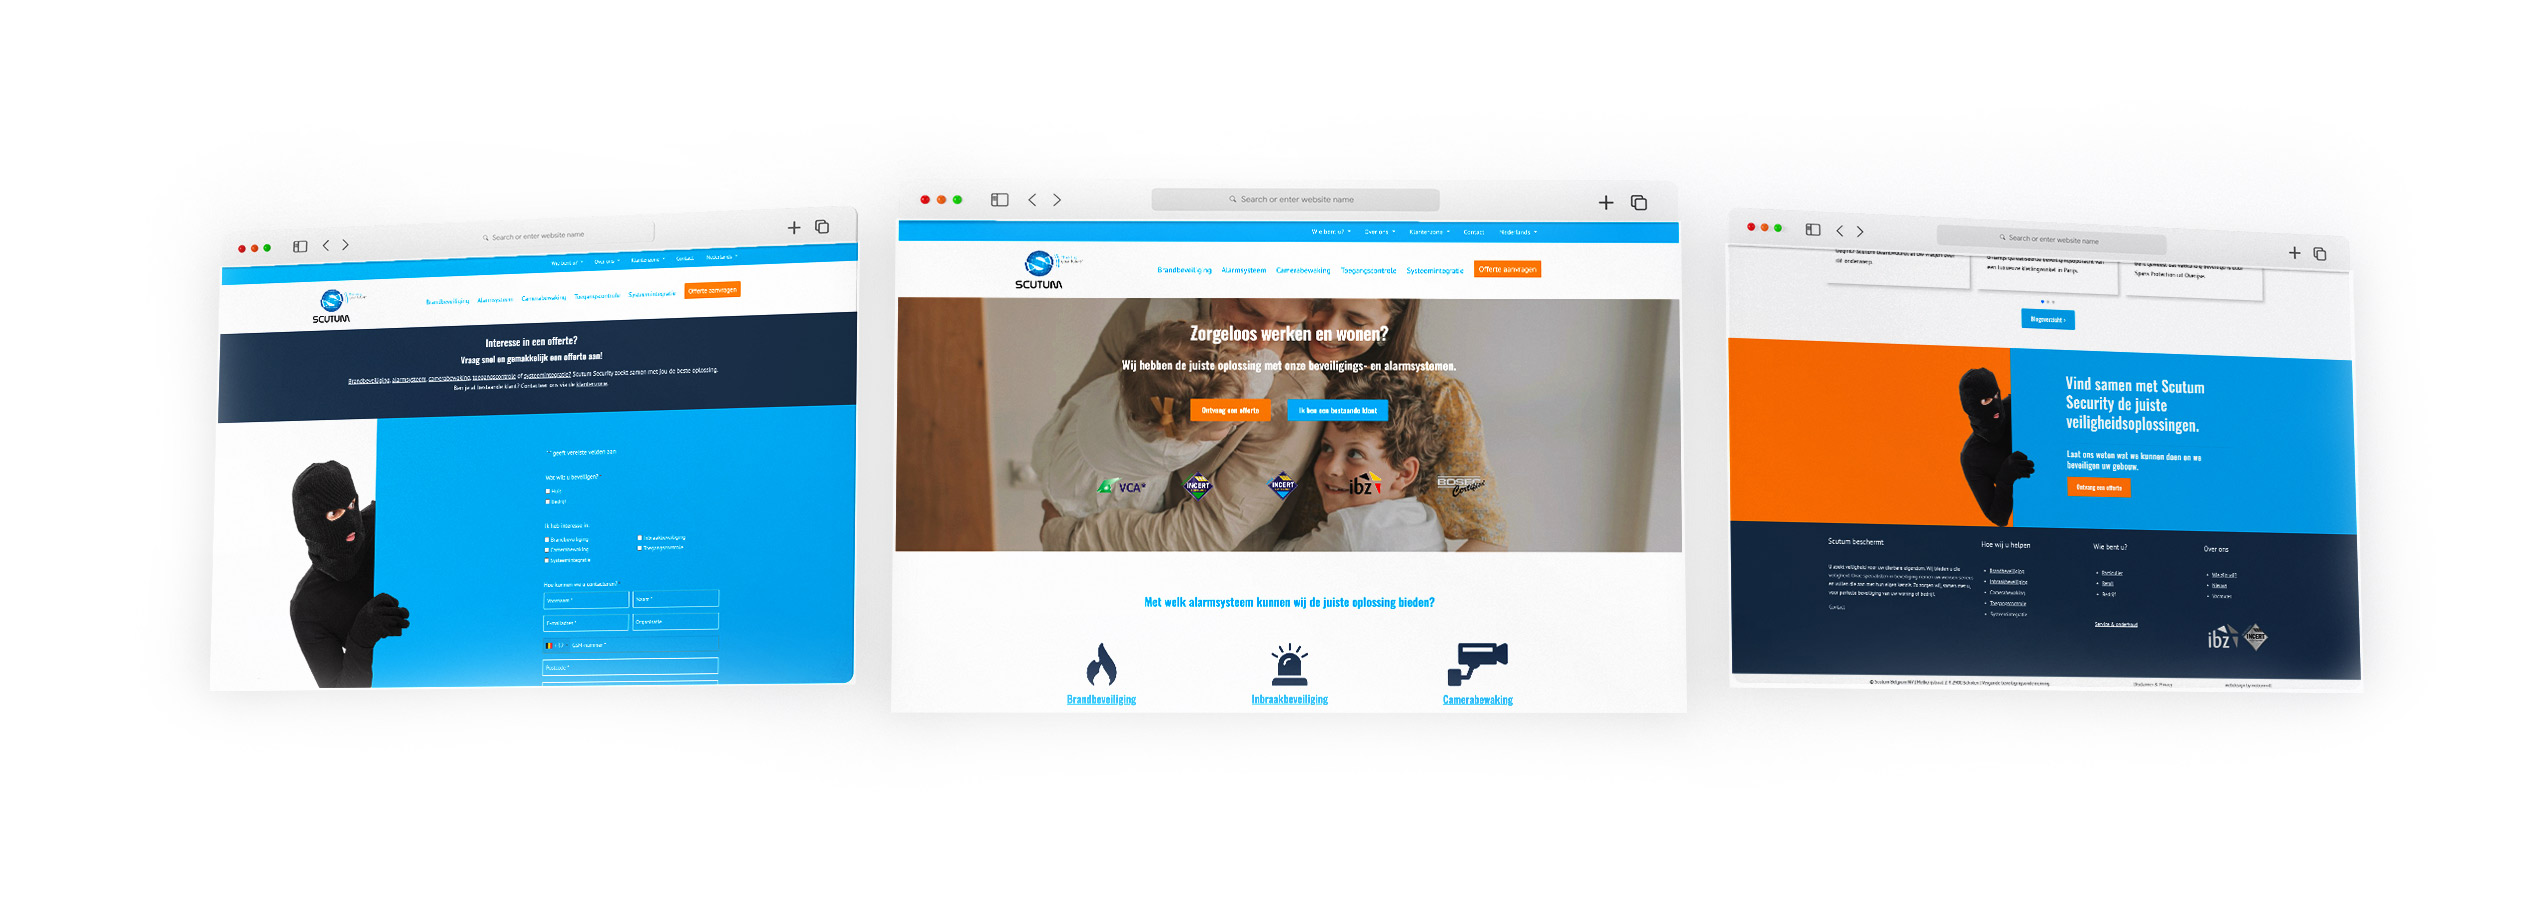 SEO-optimalisatie na bedrijfsovername en rebranding - Motiomill Online Marketing Antwerpen - Scutum mockup screenshots